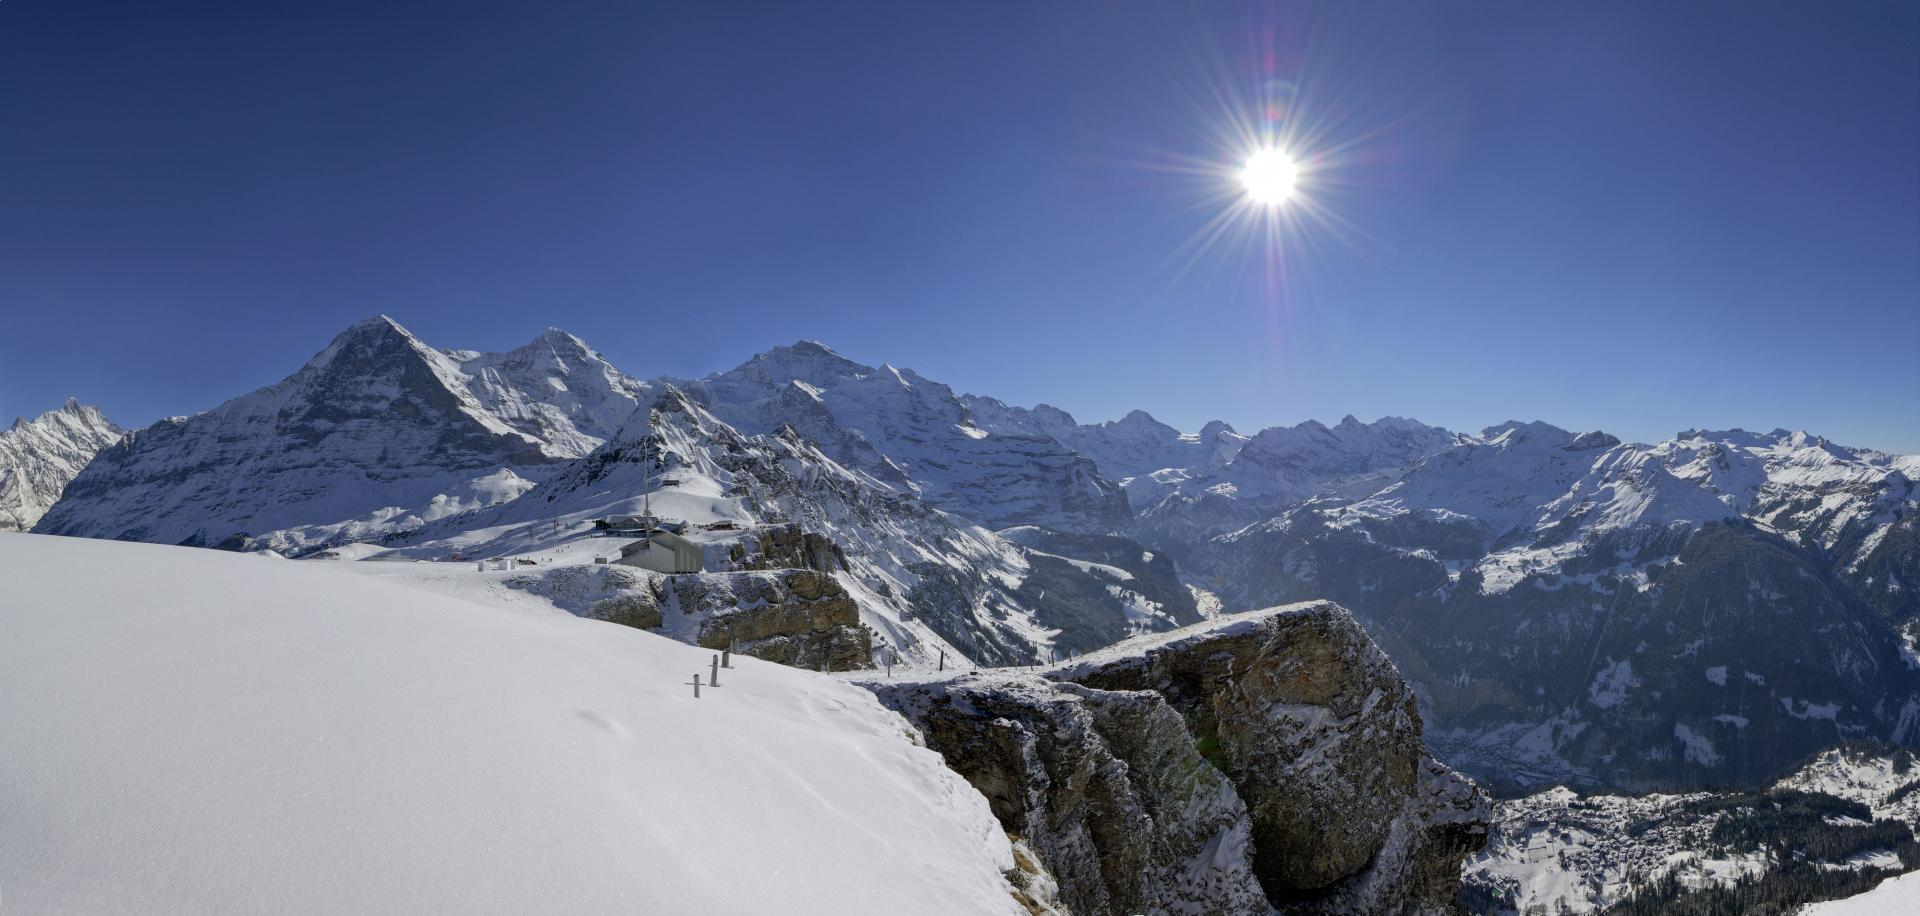 Jungfrau Top of Europe Packages, Pauschalangebote und